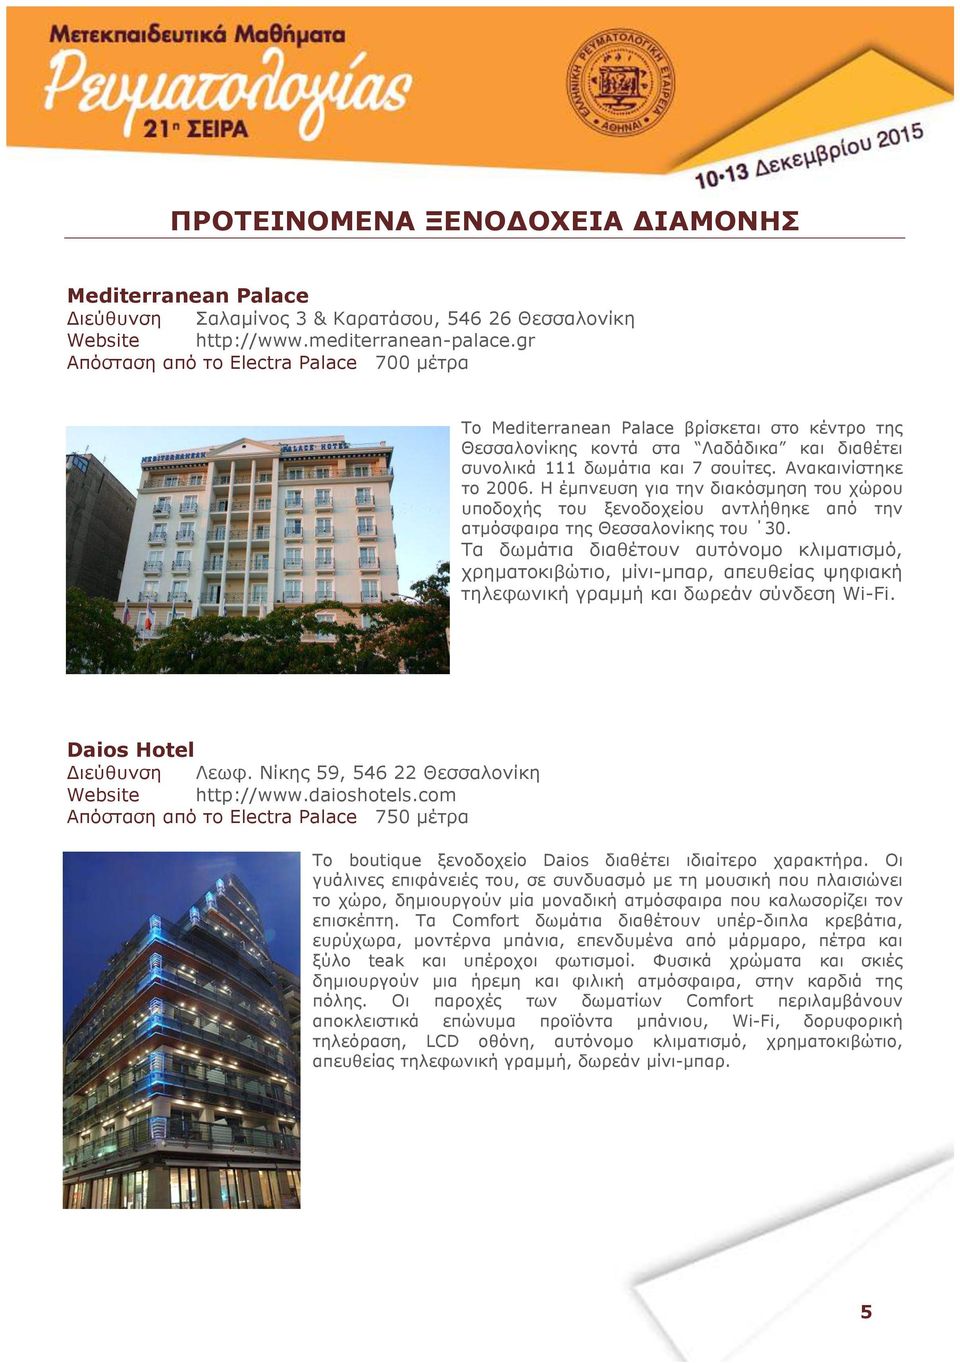 Η έµπνευση για την διακόσµηση του χώρου υποδοχής του ξενοδοχείου αντλήθηκε από την ατµόσφαιρα της Θεσσαλονίκης του 30.